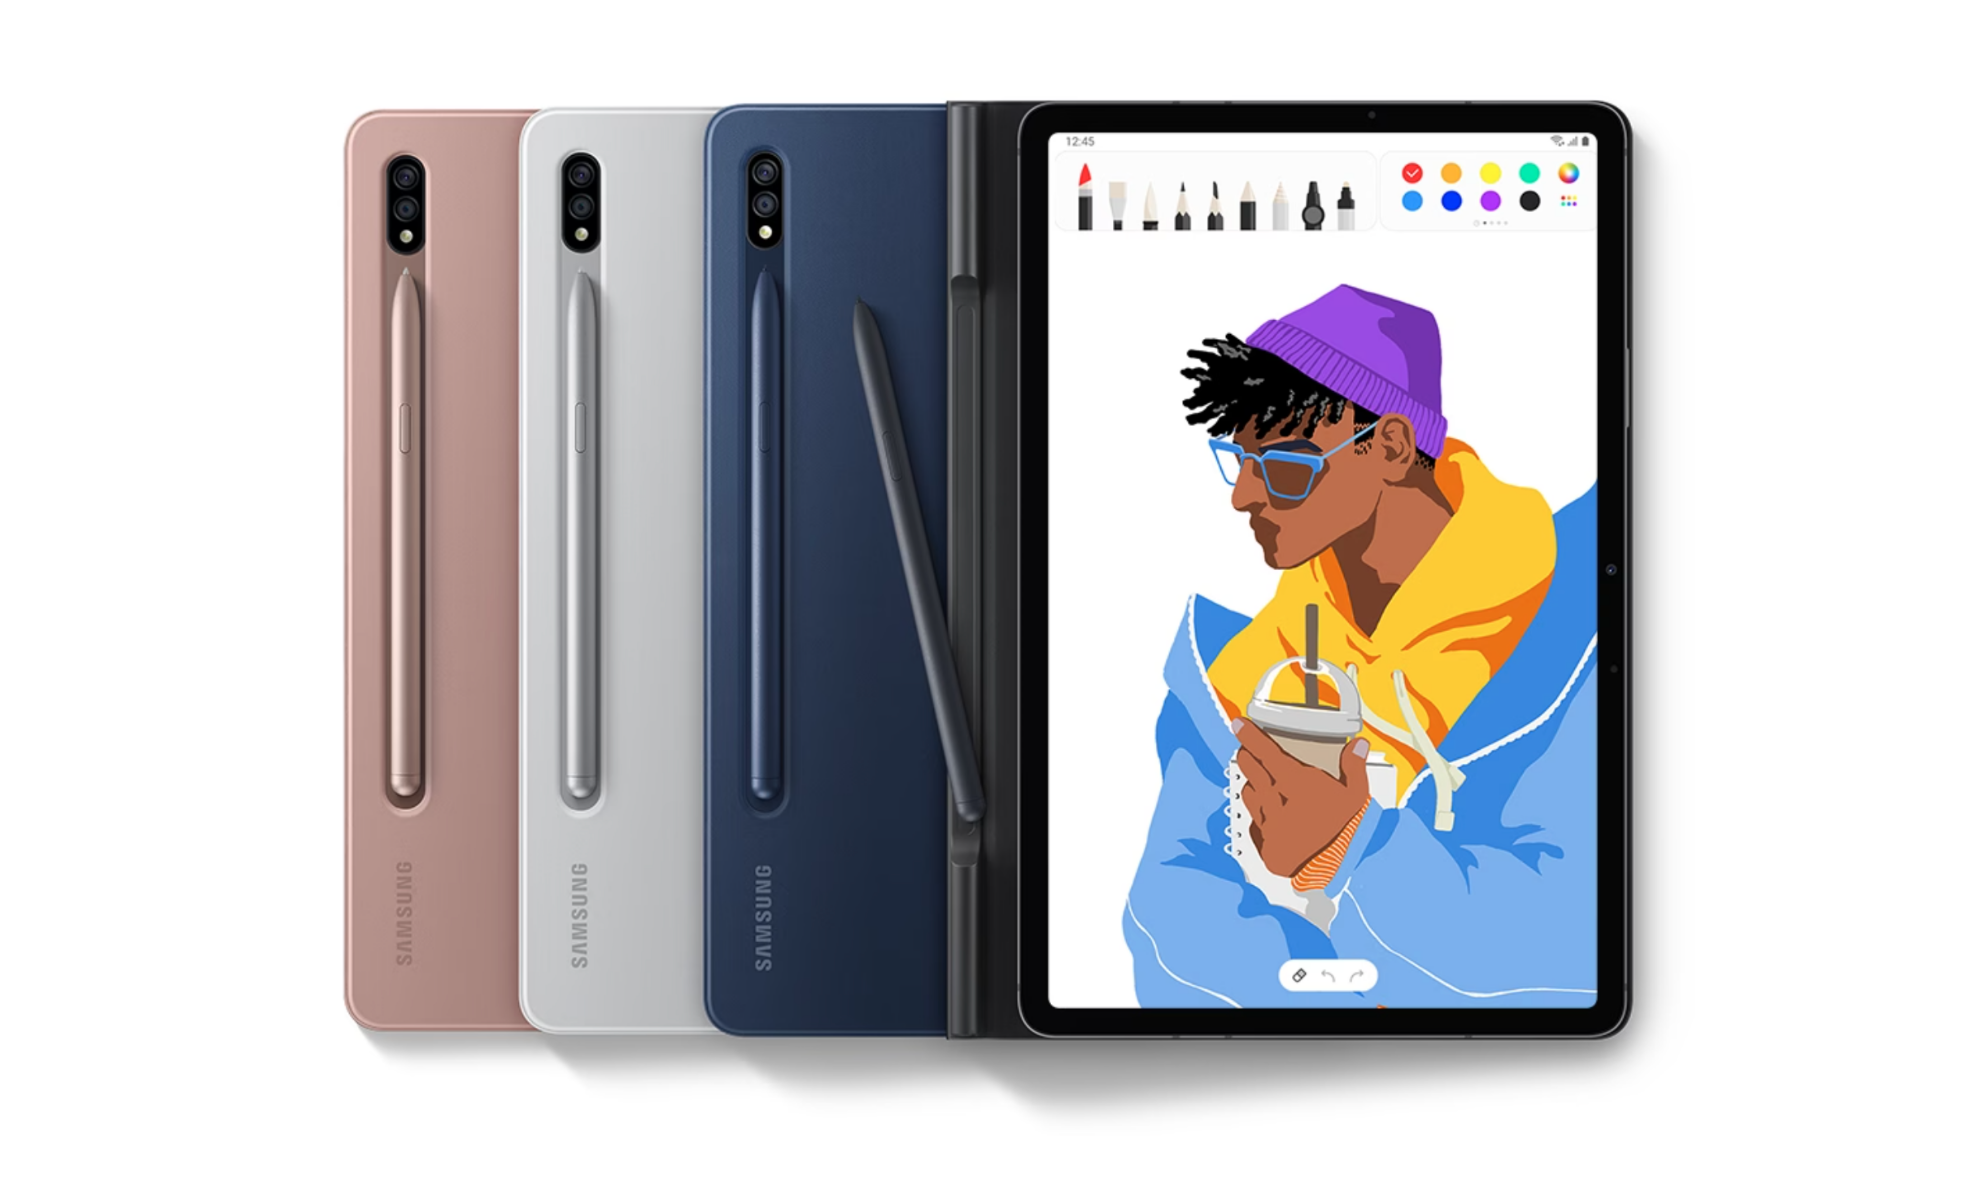 Bao da Galaxy Tab S7 màu hồng, bạc, xanh navy, đen đặt liên tiếp cạnh nhau. Bút màu hồng đính vào mặt sau của bao da màu hồng, bút bạc đính trên mặt sau bao da màu bạc và bút xanh navy đính trên mặt sau của bao da màu xanh navy, bao da đang mở và bạn có thể nhìn thấy màn hình với một chiếc bút bên trên.